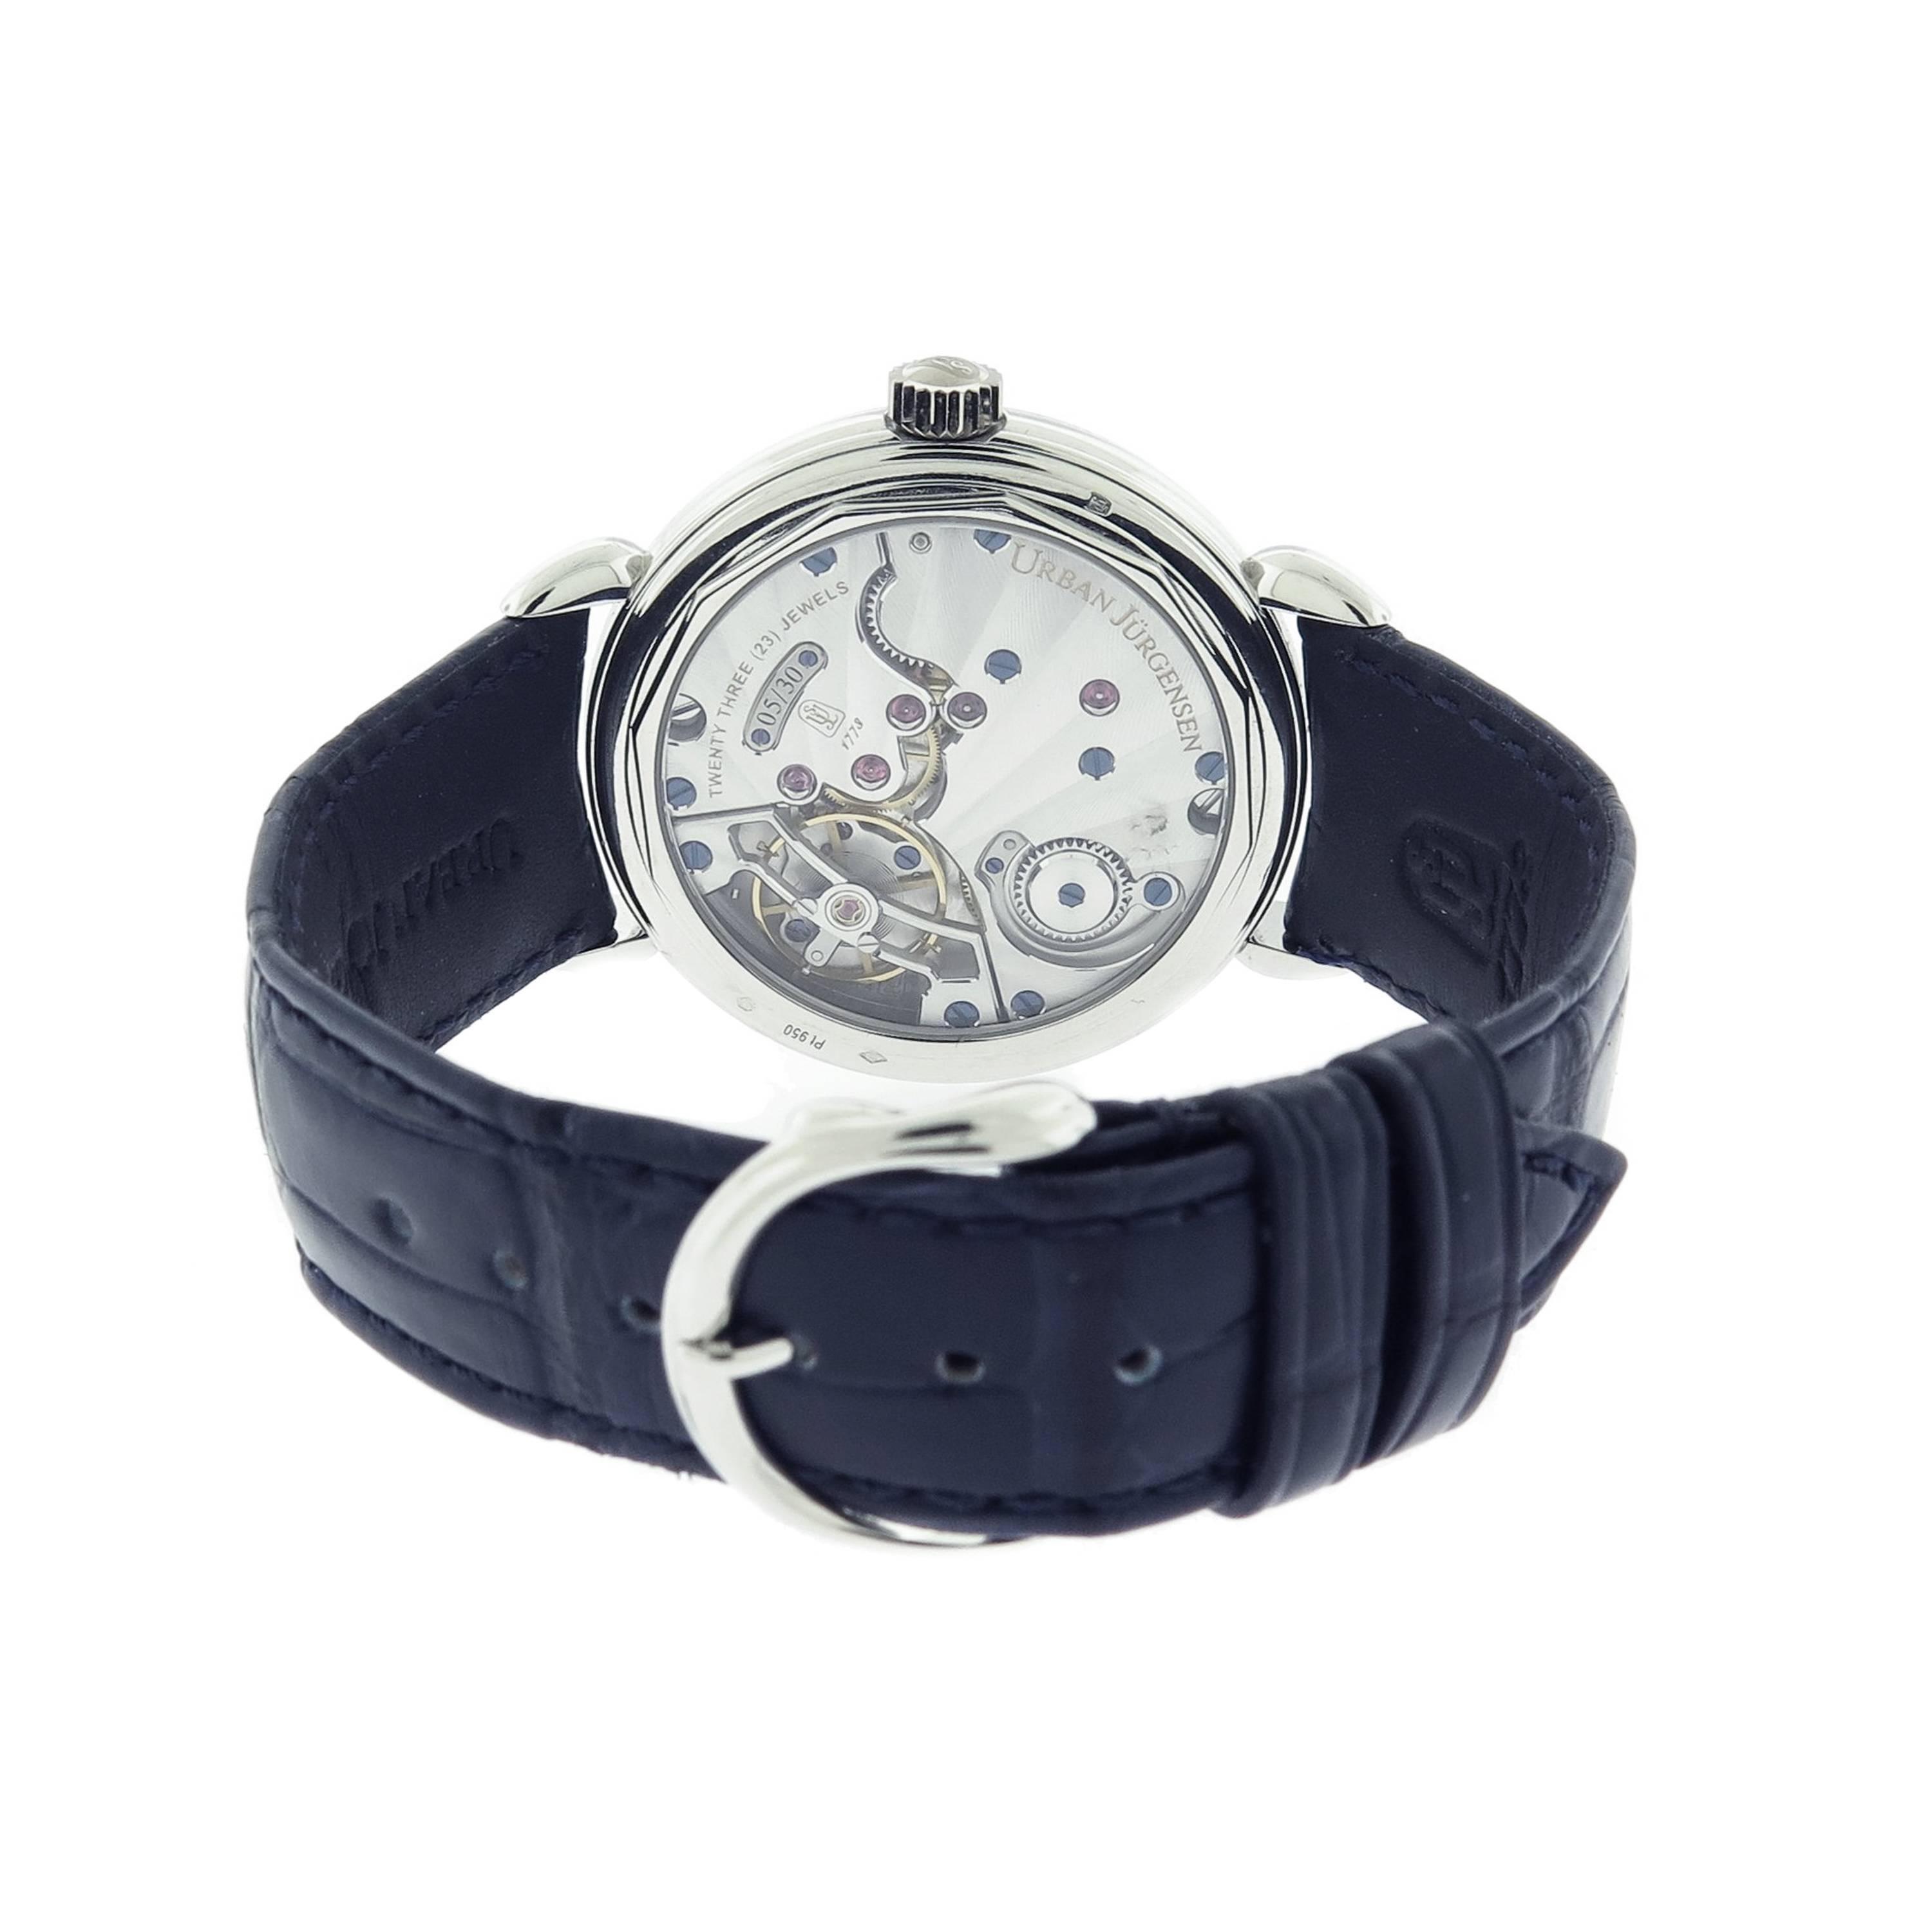 Modern Urban Jurgensen Platinum Limited Edition manual Wristwatch